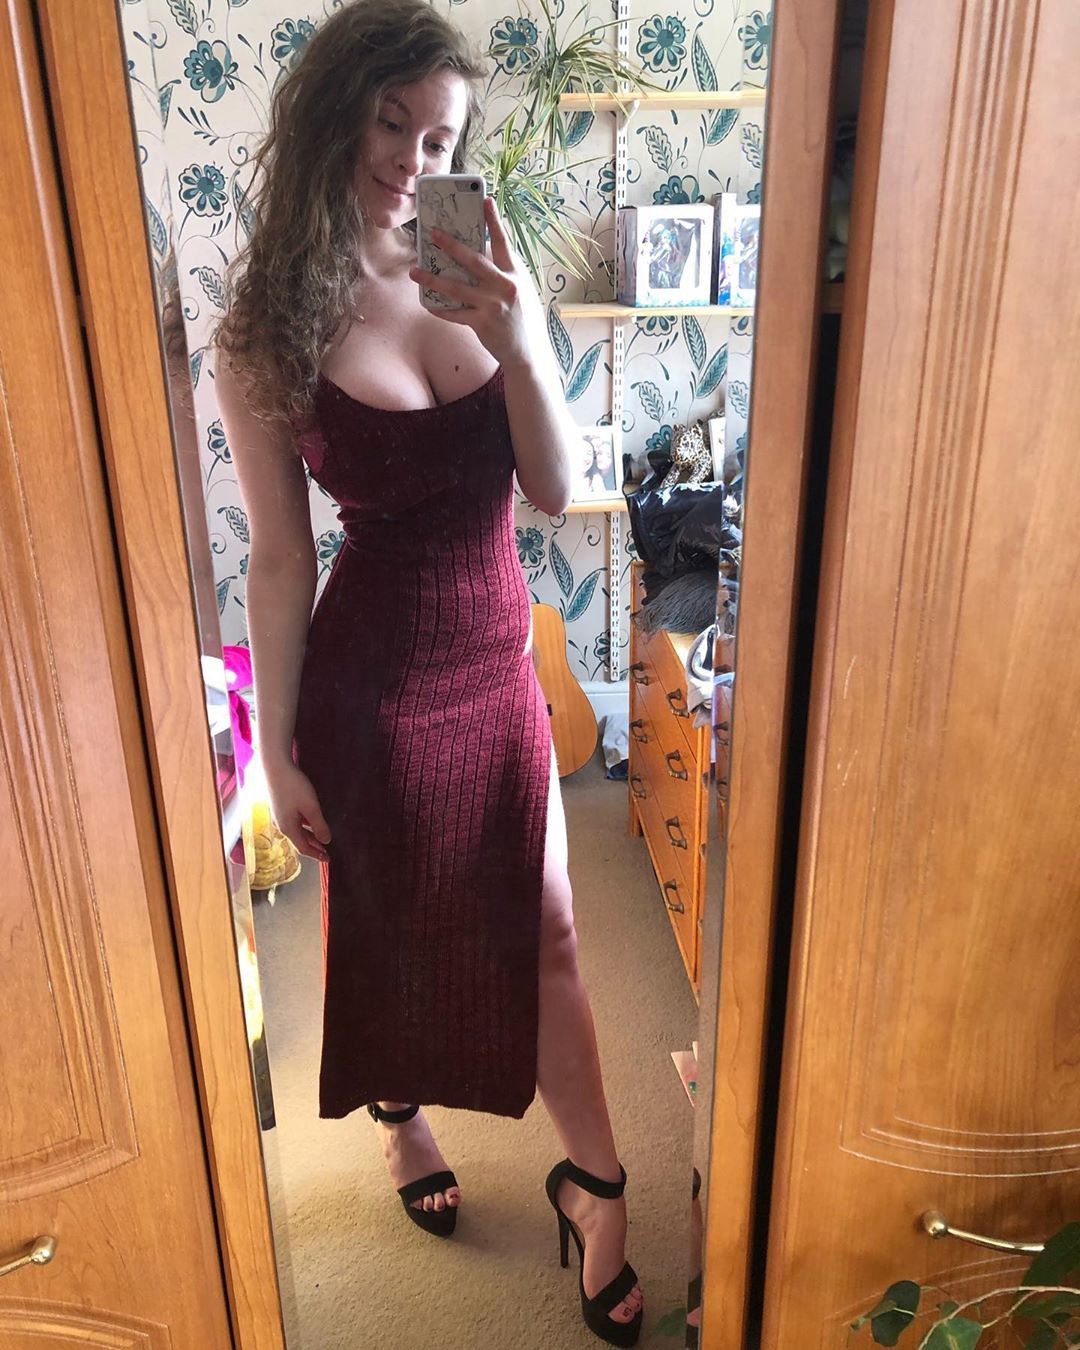 tits tight dress selfie